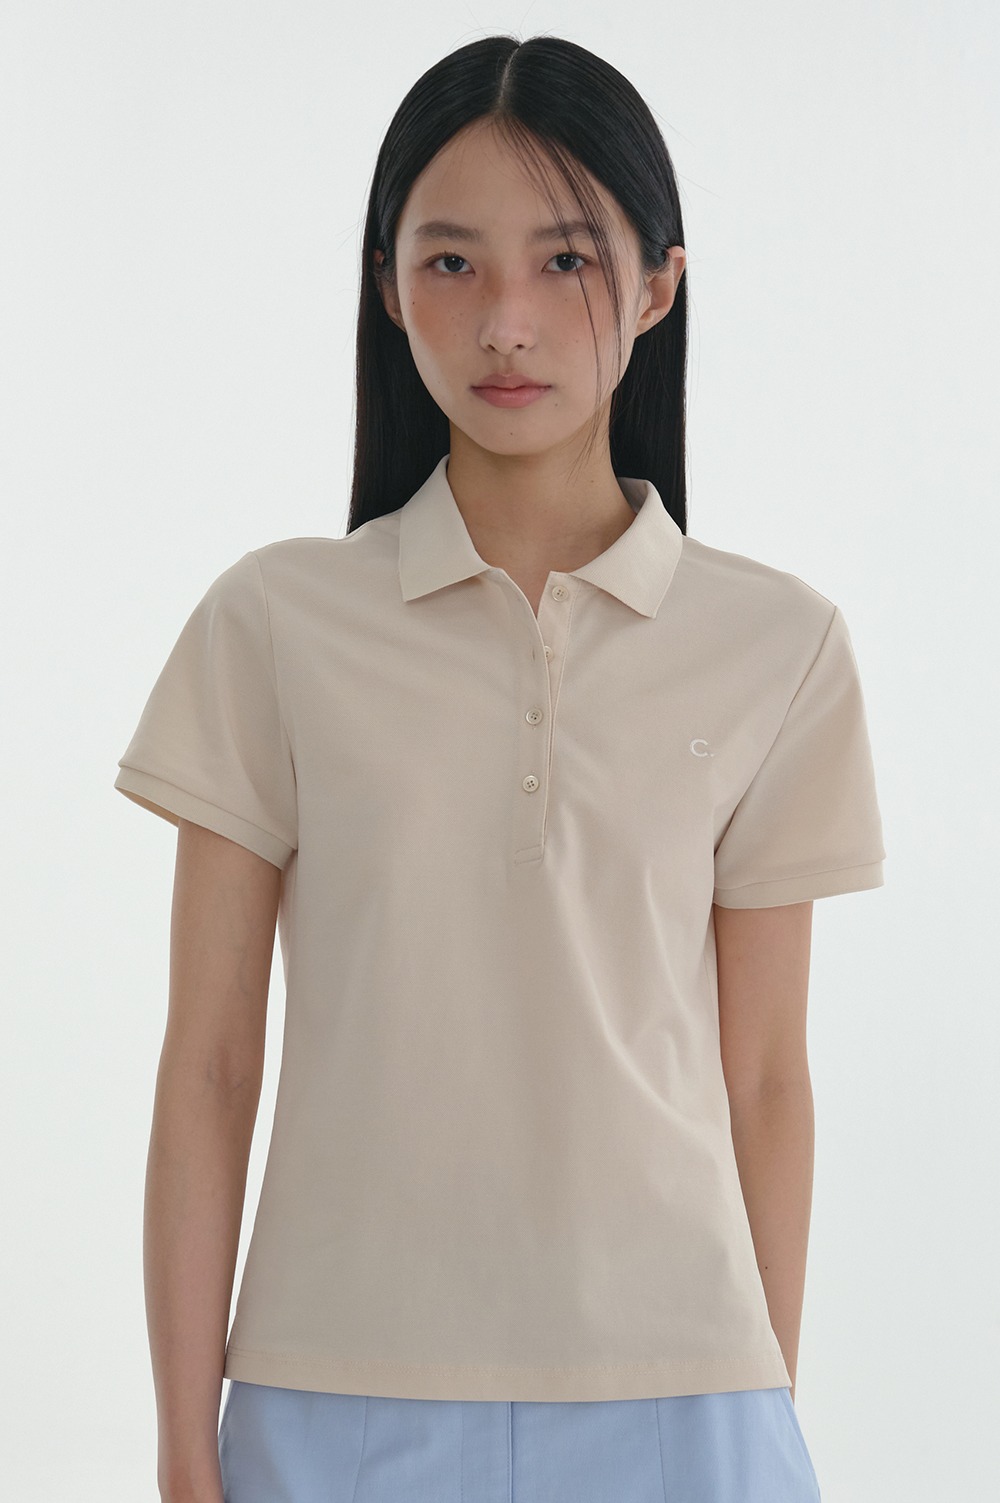 clove - [24SS clove] Standard Pique T-Shirt_Women (Light Beige)